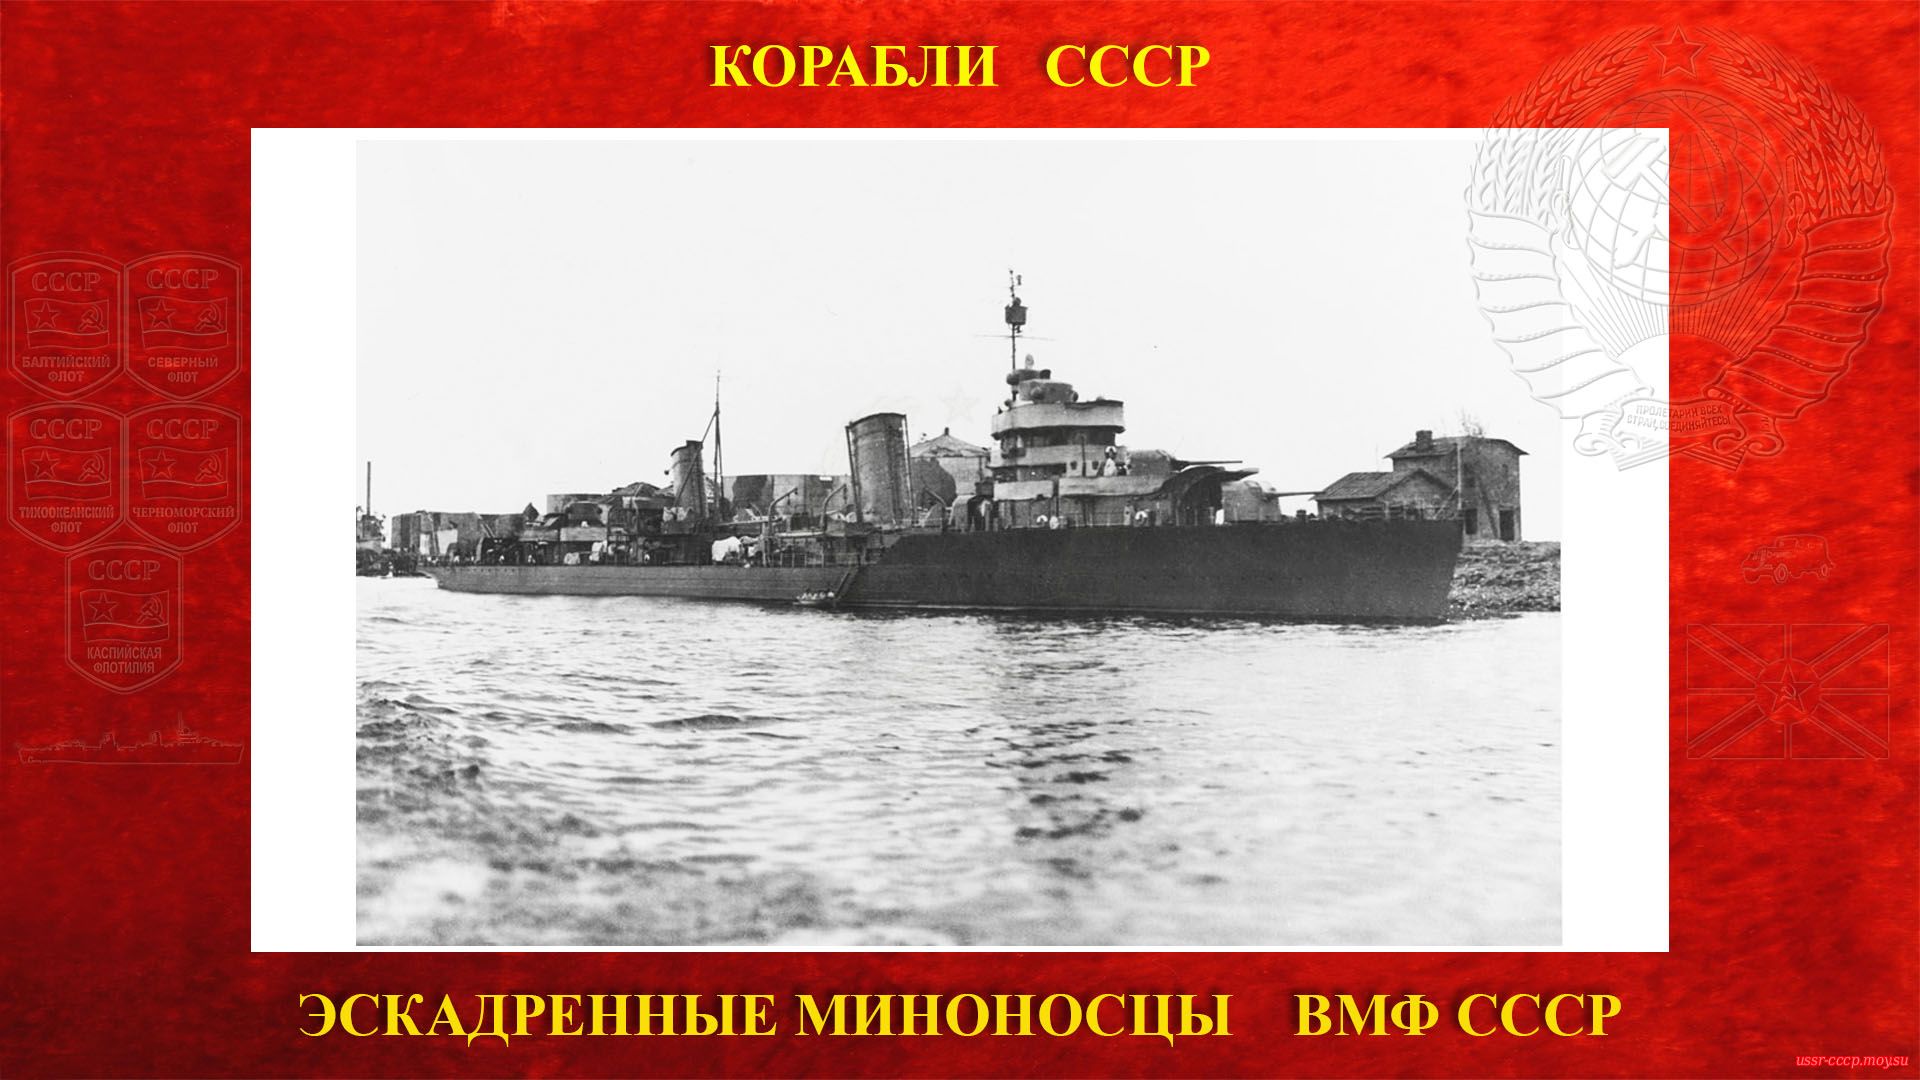 Тбилиси - Советский лидер эскадренных миноносцев ВМФ СССР (повествование)